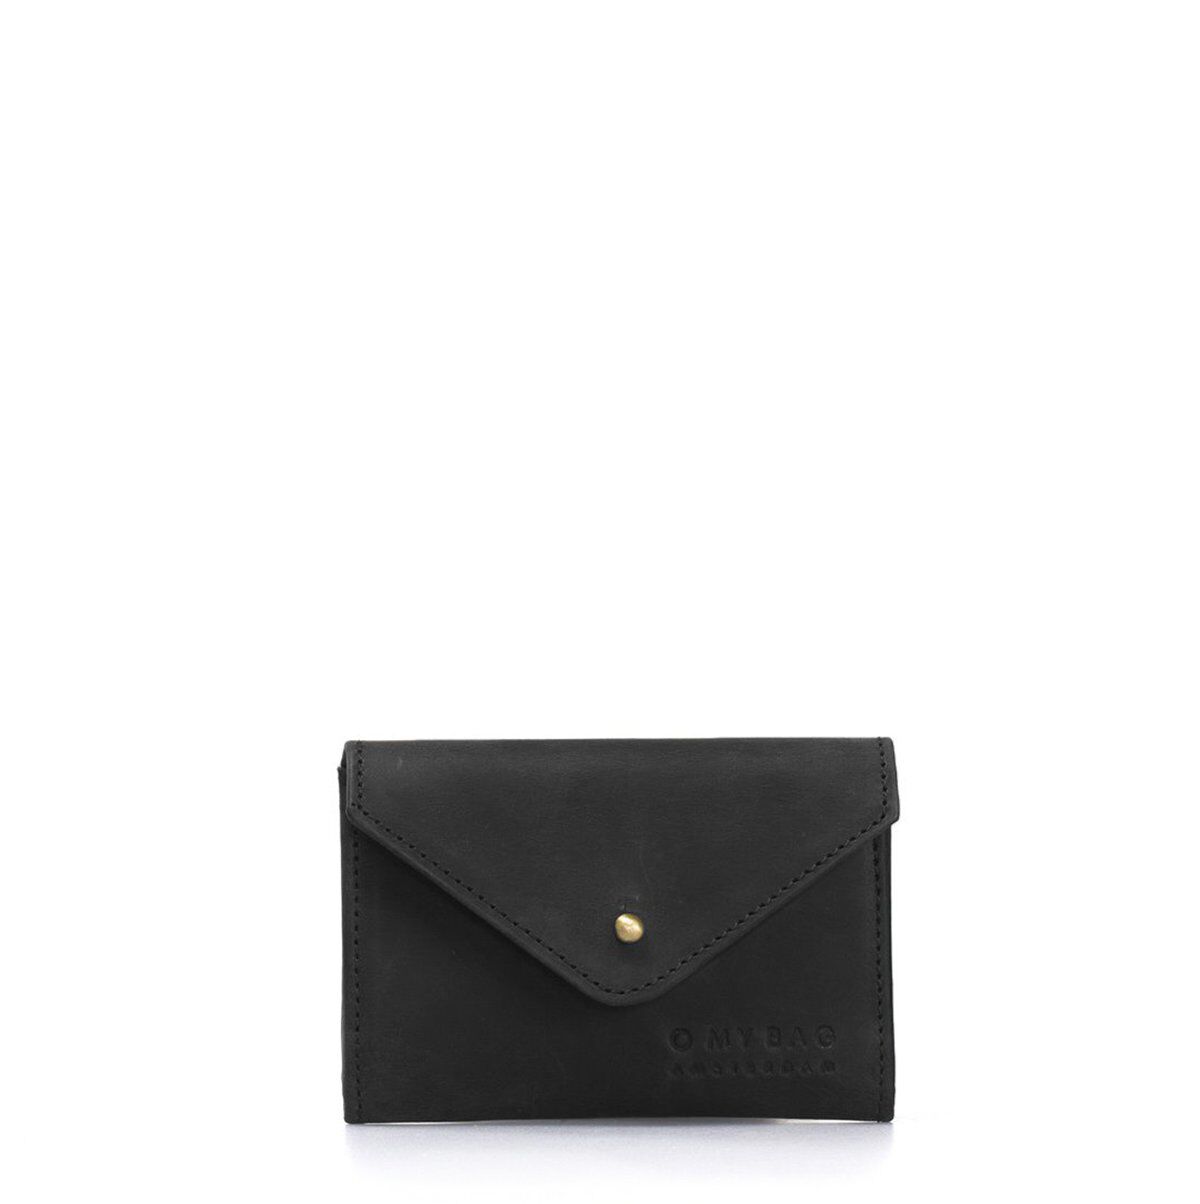 schwarze kleine Ledergeldbörse "Josie's Purse" von O my Bag